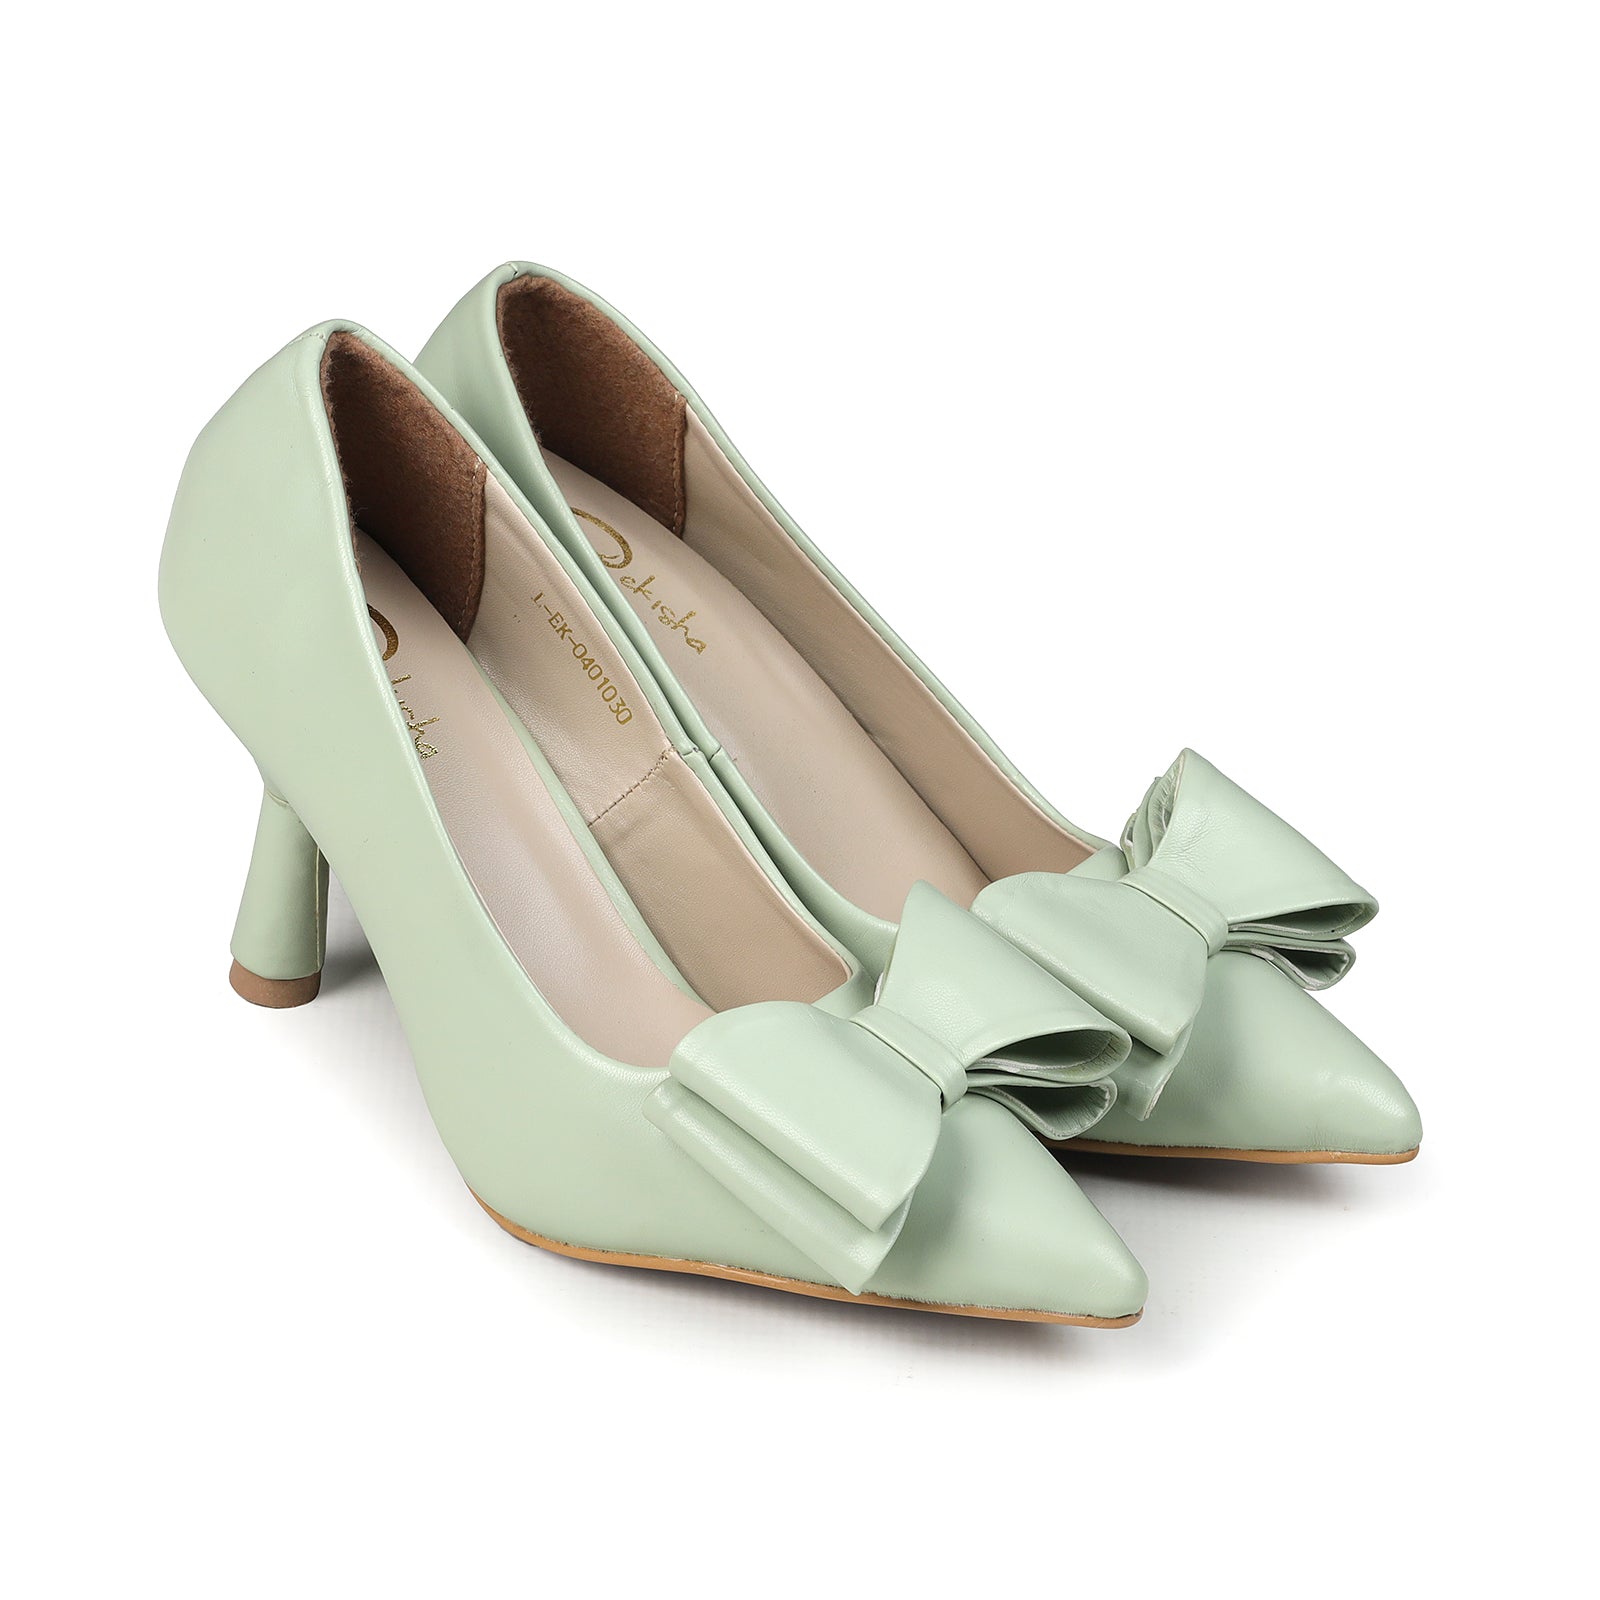 Buy Sherrif Shoes Womens Golden Block Heel Sandals Online